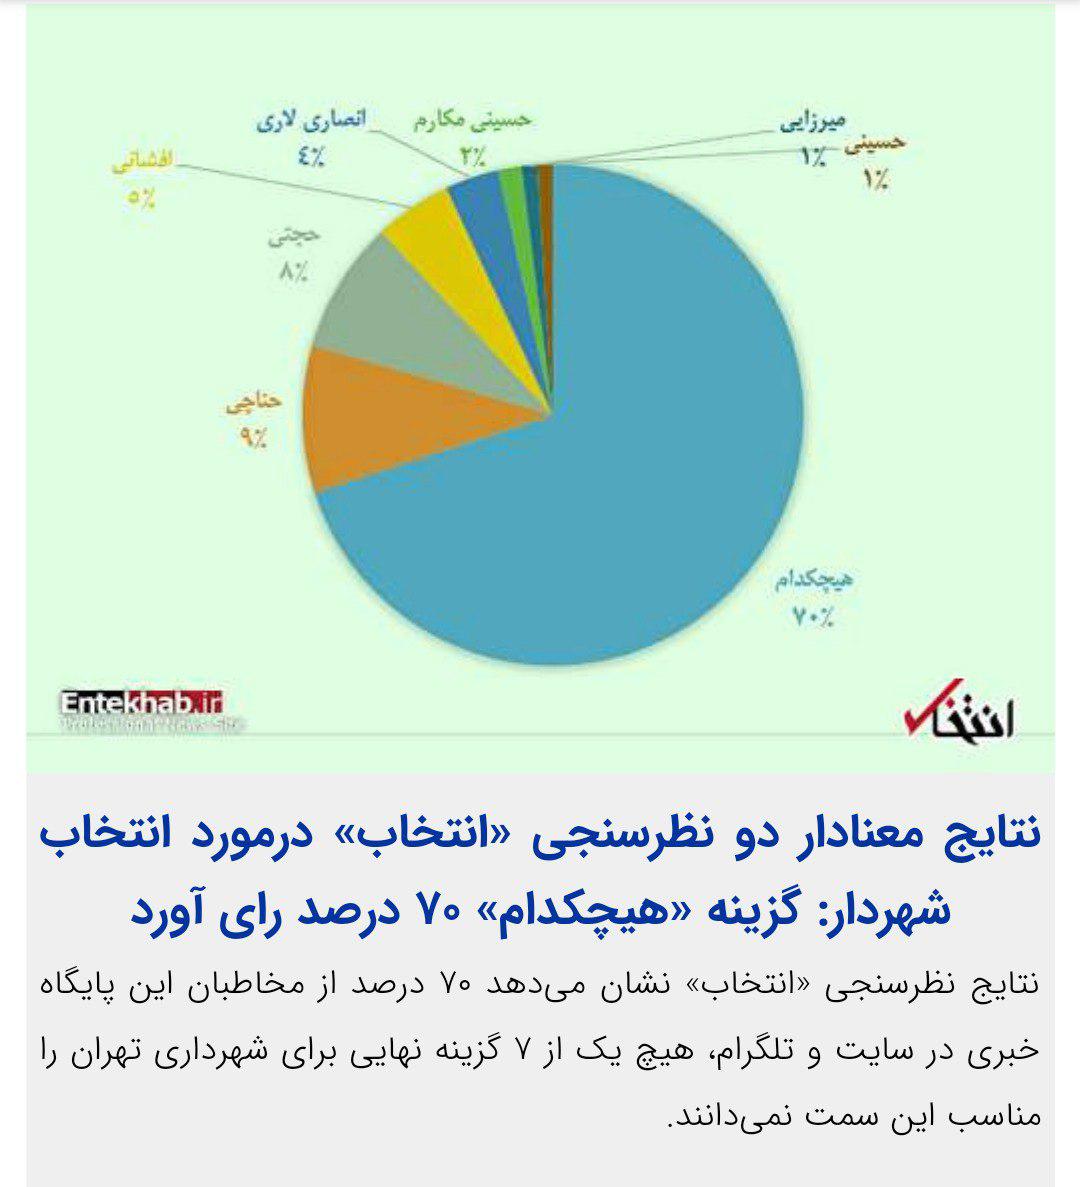 نتایج معنادار دو نظرسنجی «انتخاب» درمورد انتخاب شهردار تهران: گزینه «هیچکدام» 70 درصد رای آورد